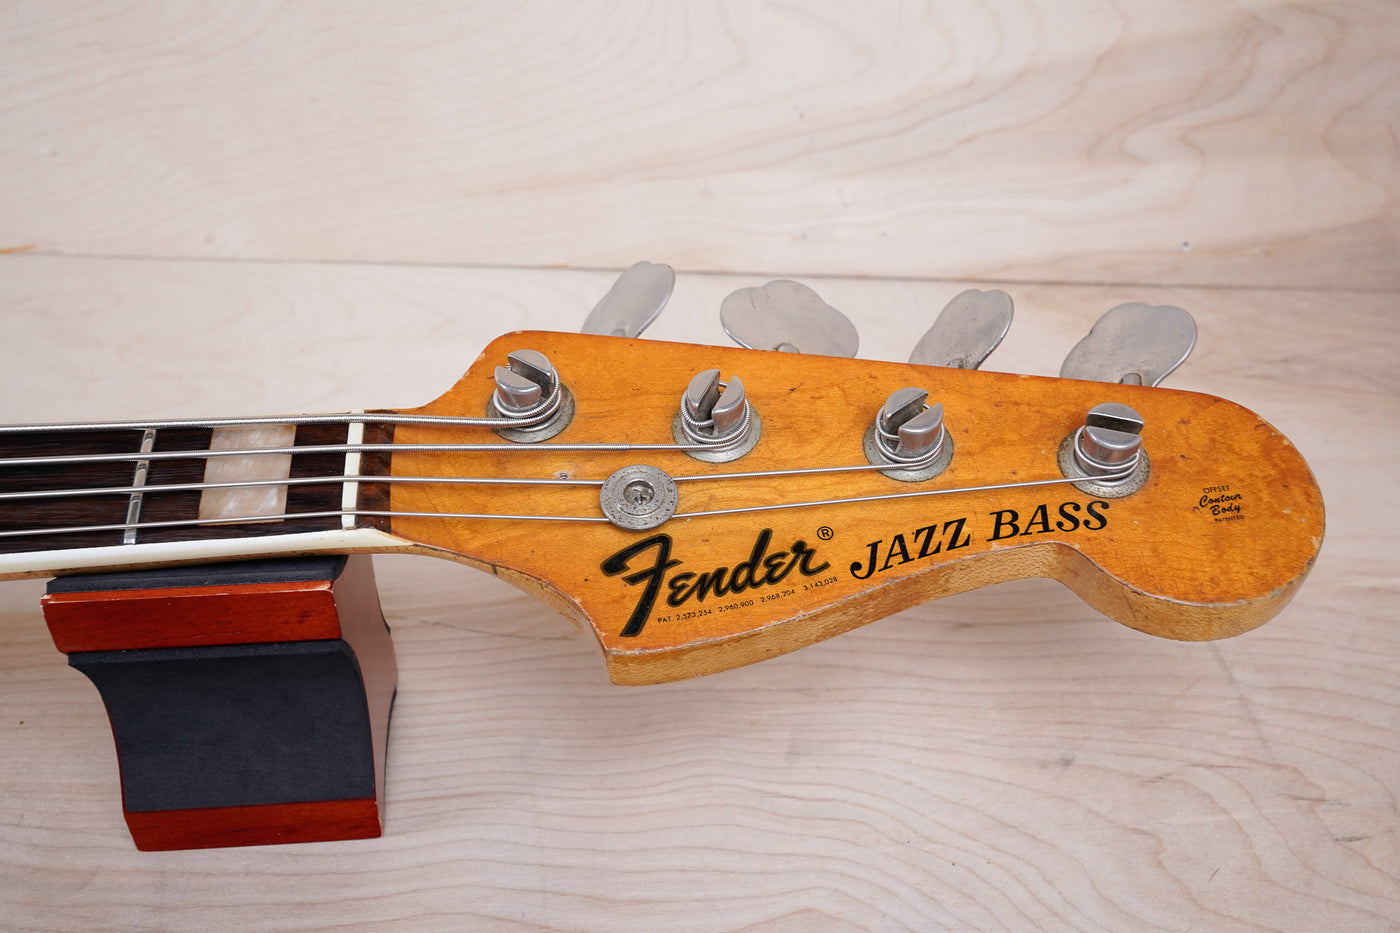 Fender Jazz Bass 1970 Cherry Red Refinish Vintage USA w/ Hard Case